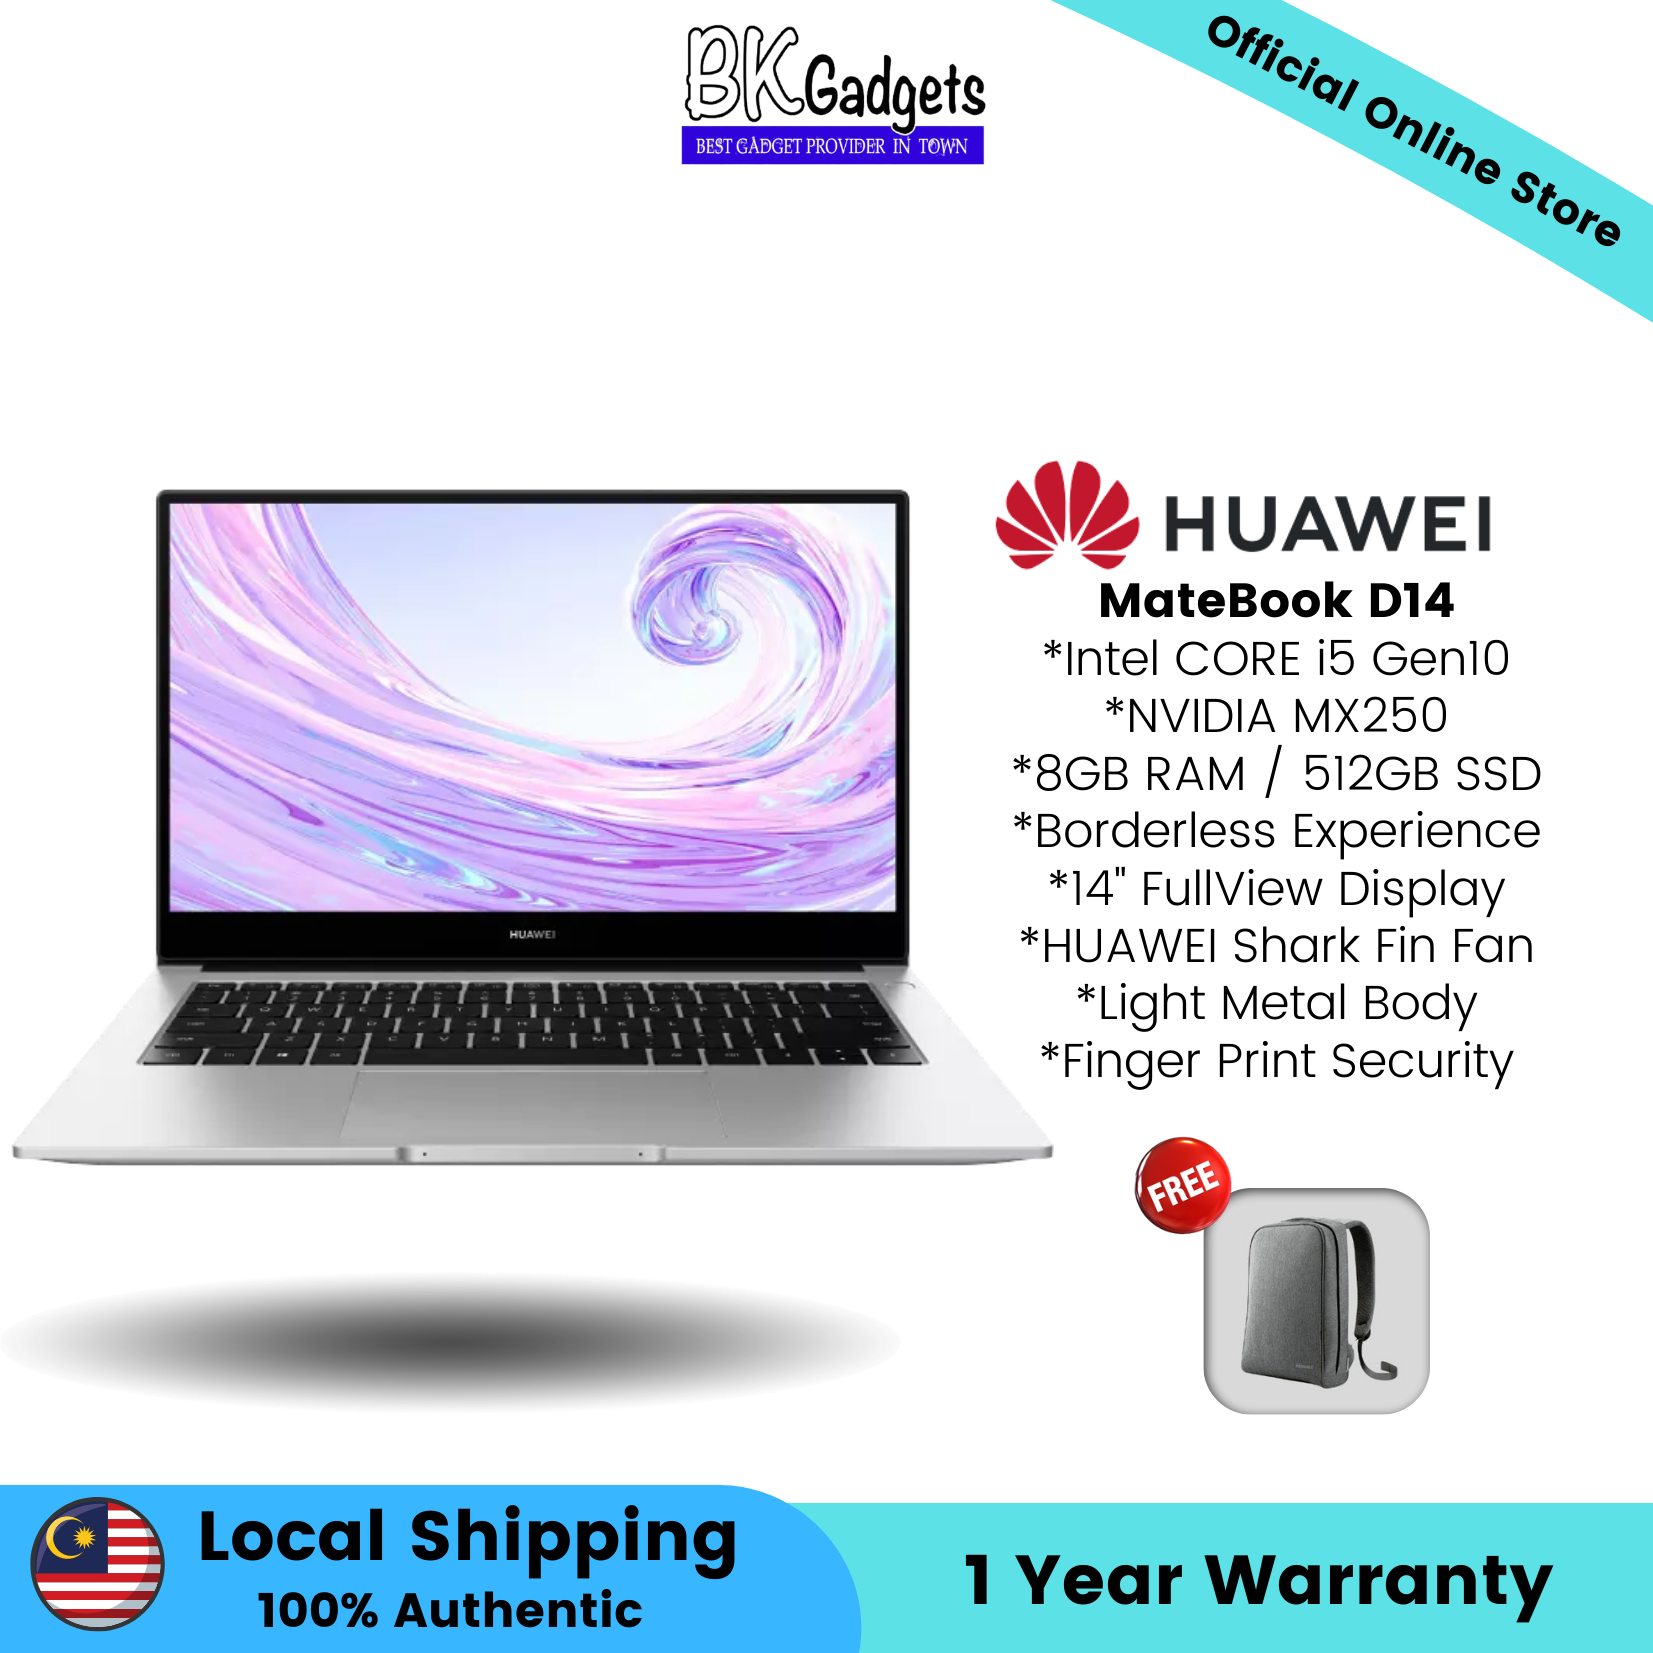 Huawei Matebook D14 - 8GB RAM / 512GB SSD | NVIDIA MX250 | 14" FullView Display